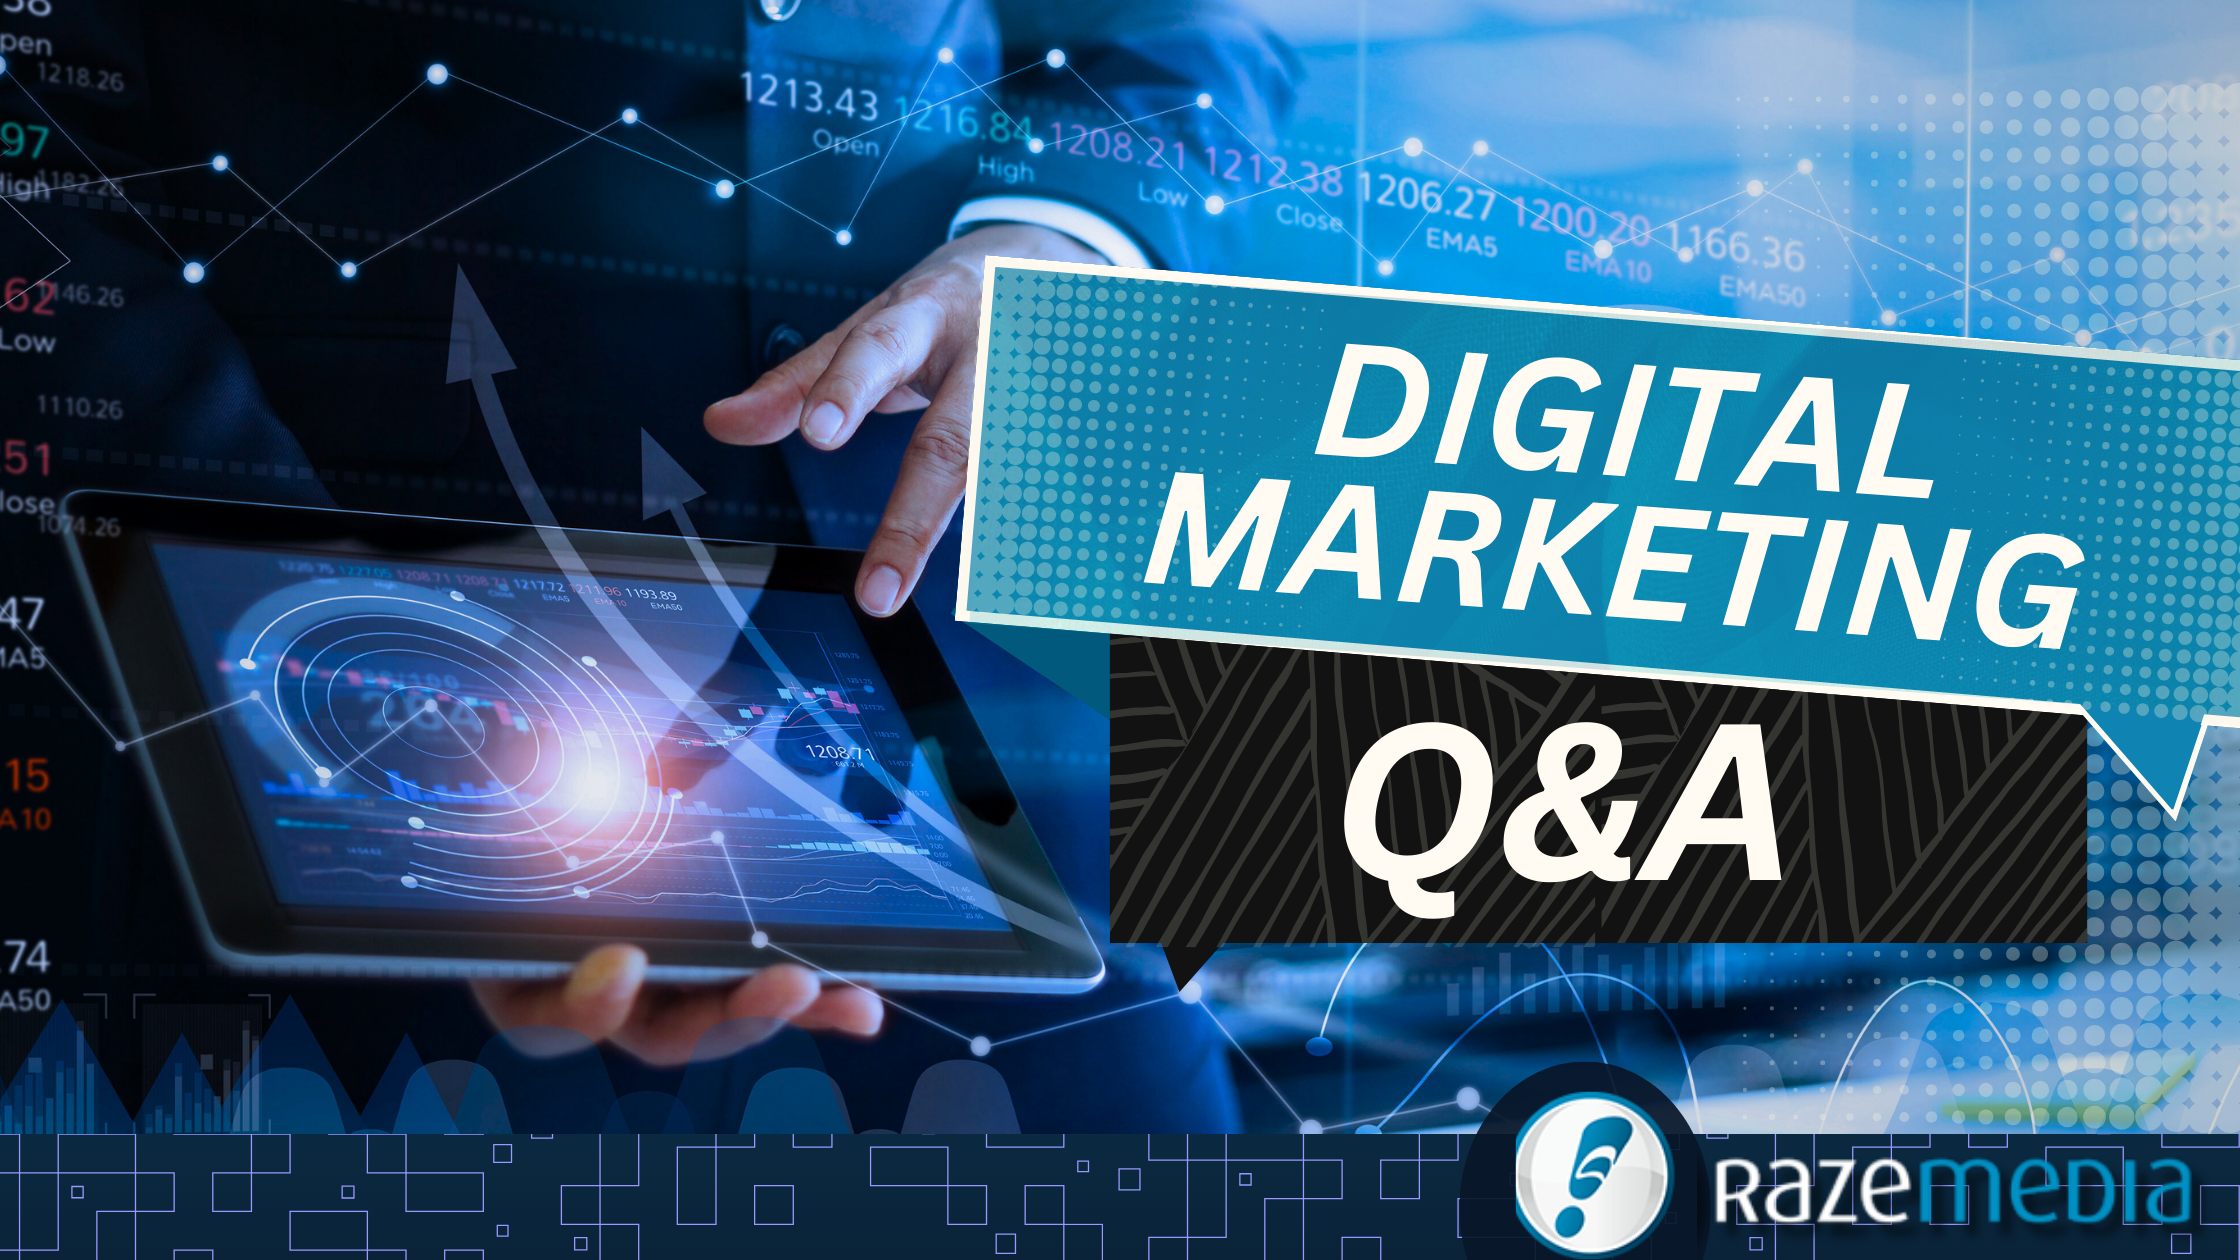 Digital Marketing Q&A Raze Media